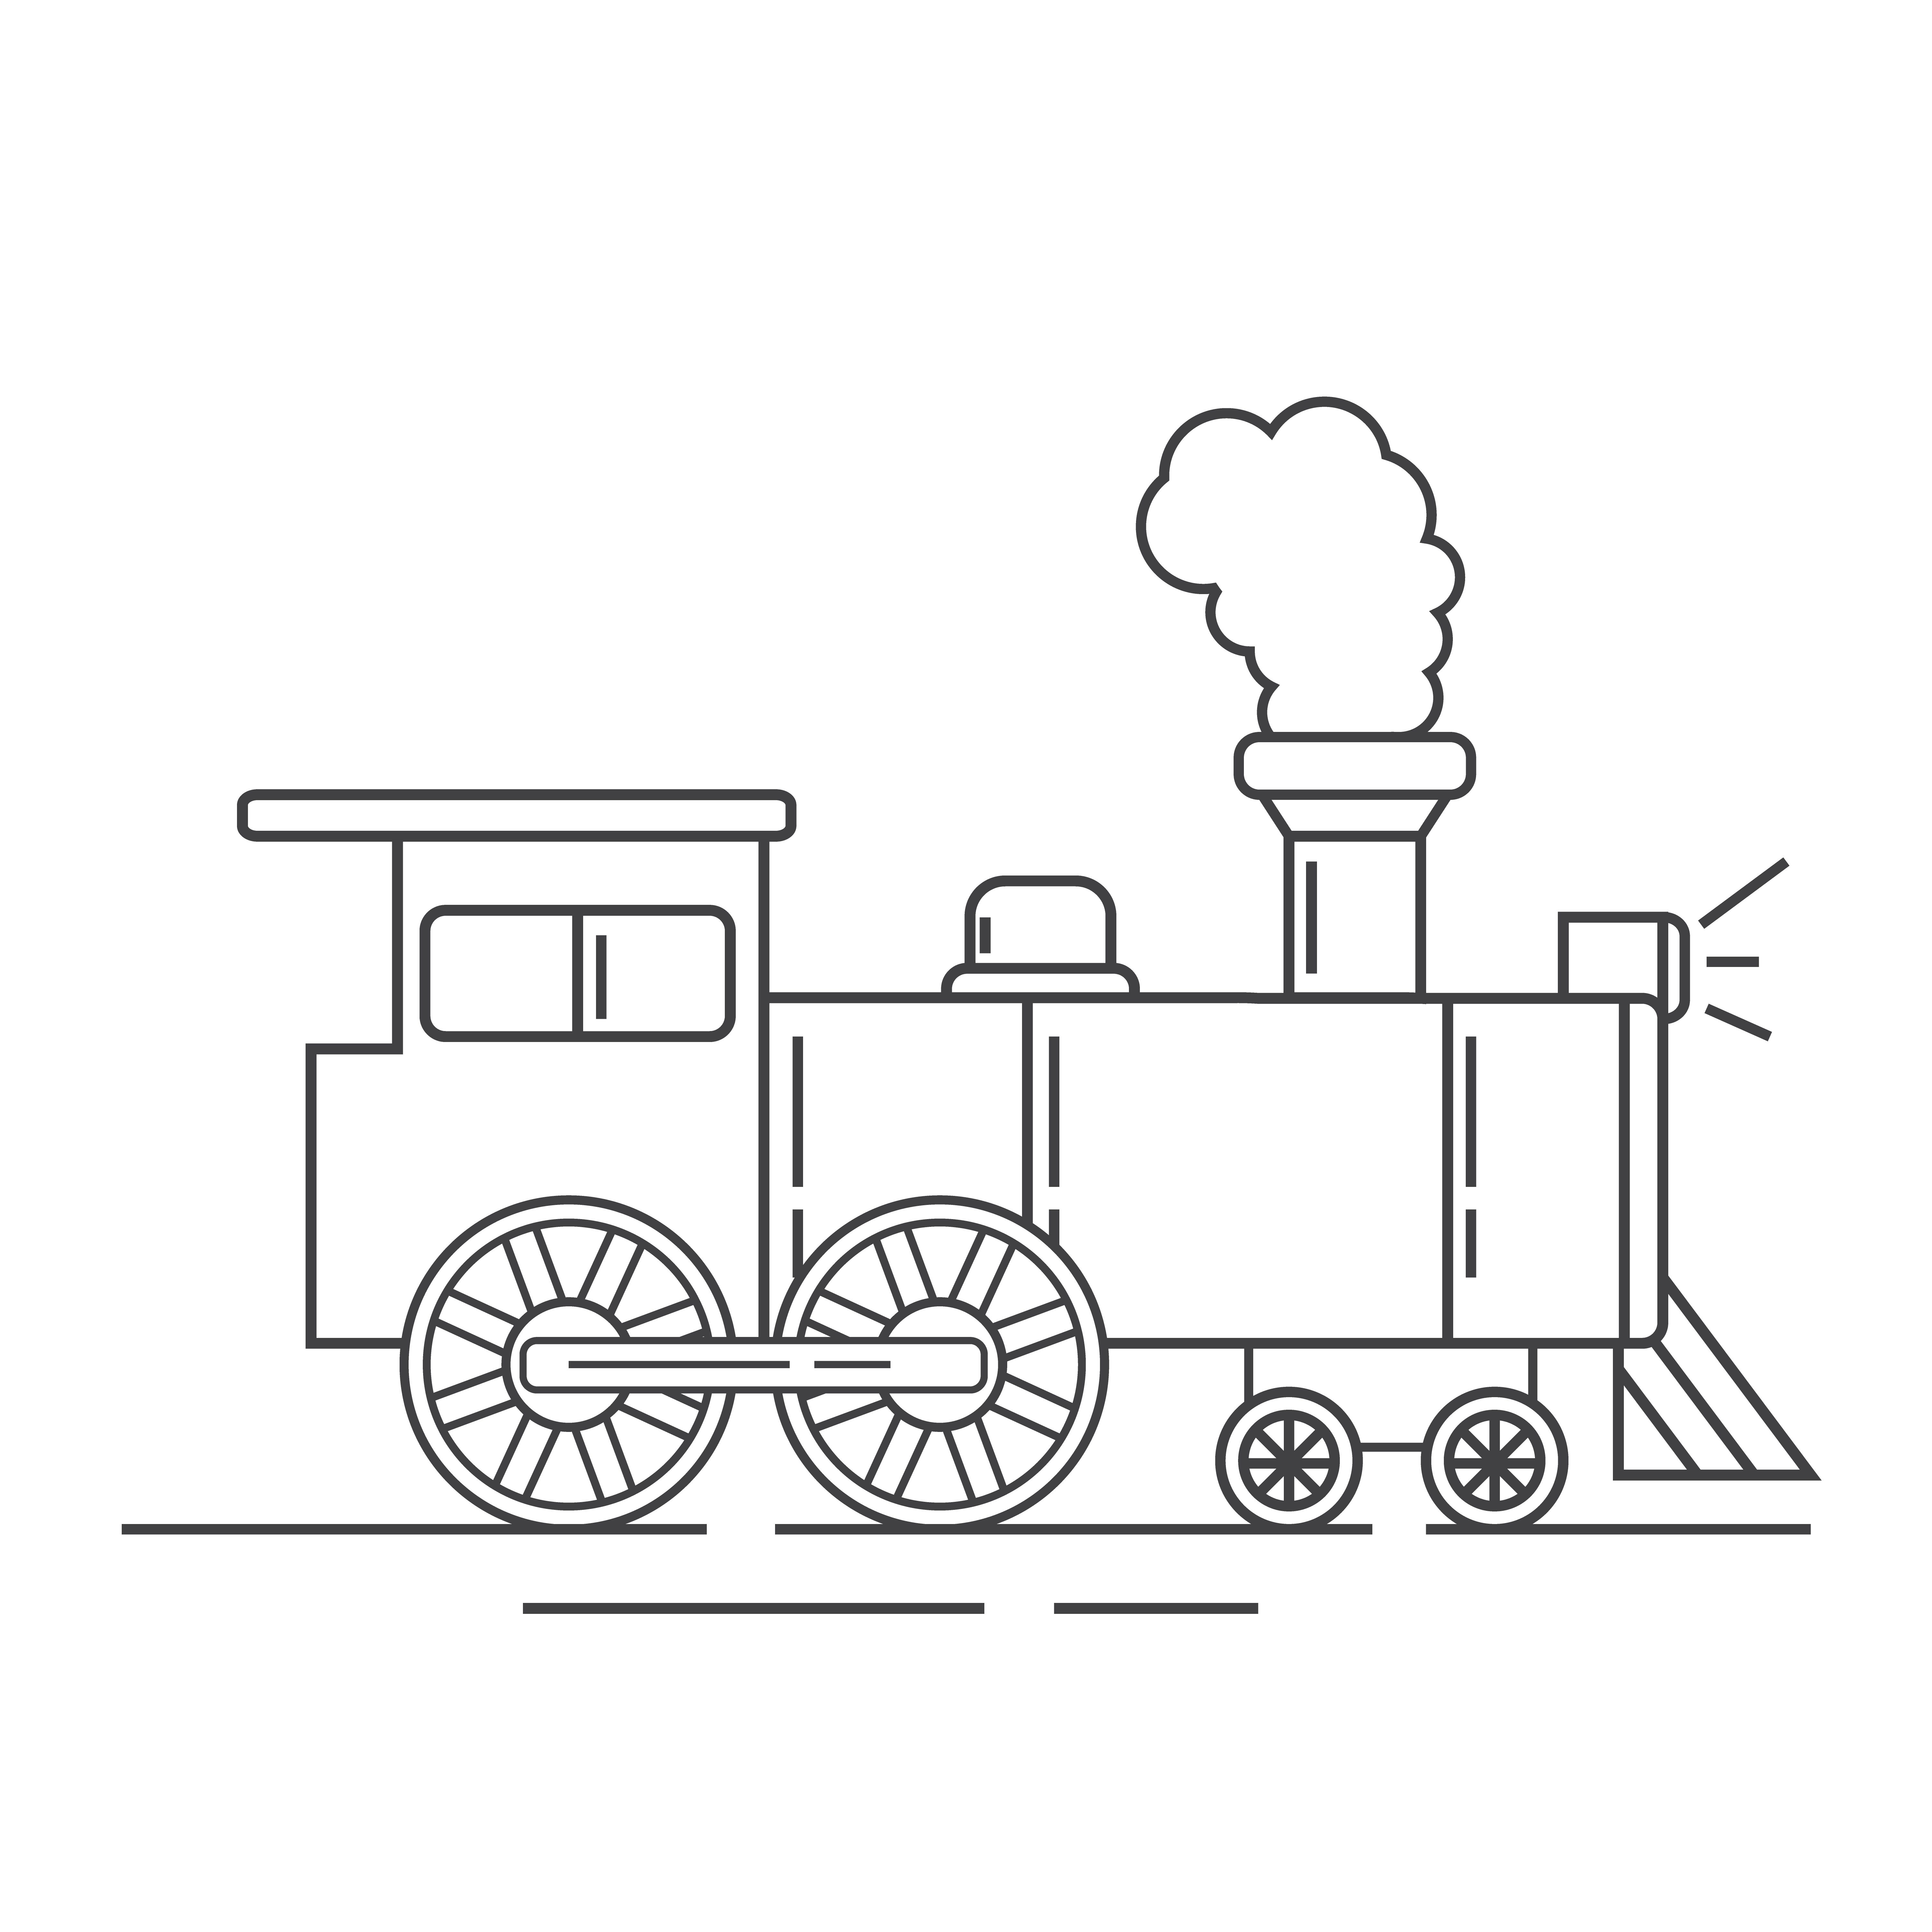 Раскраска поезд паровоз с прожектором формата А4 в высоком качестве